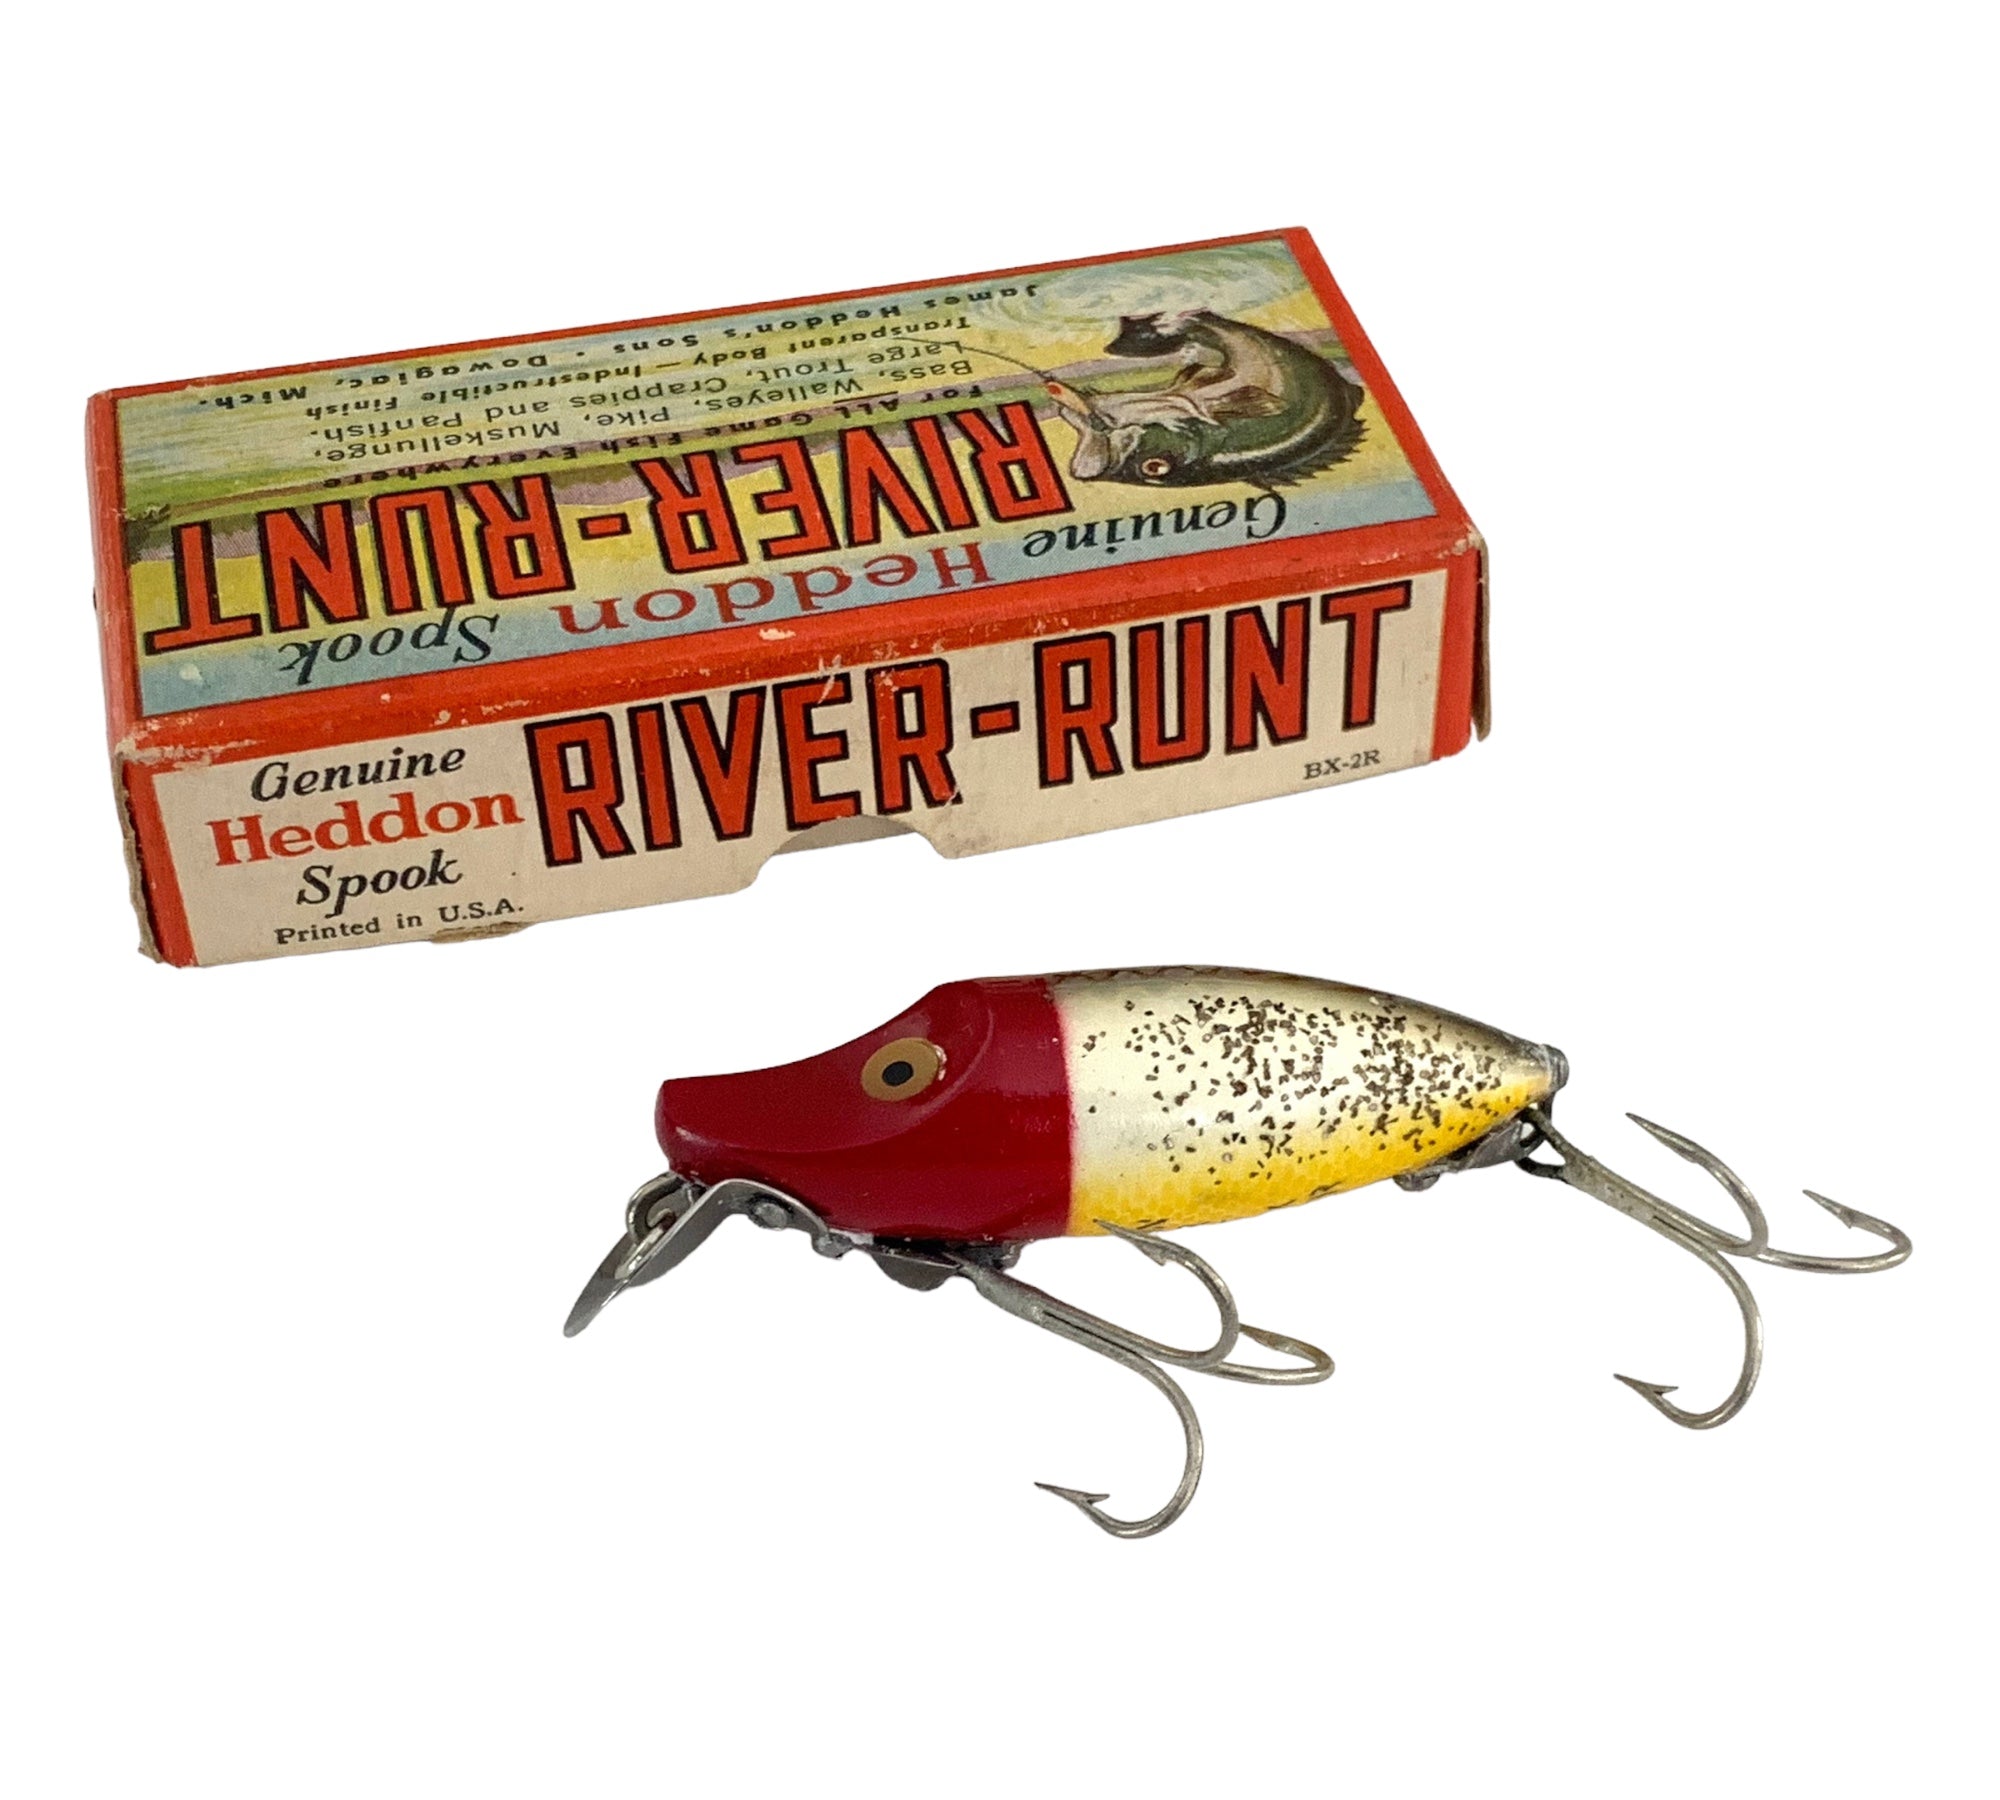 VINTAGE HEDDON RIVER Runt Spook Sinker Fishing Lure $10.00 - PicClick